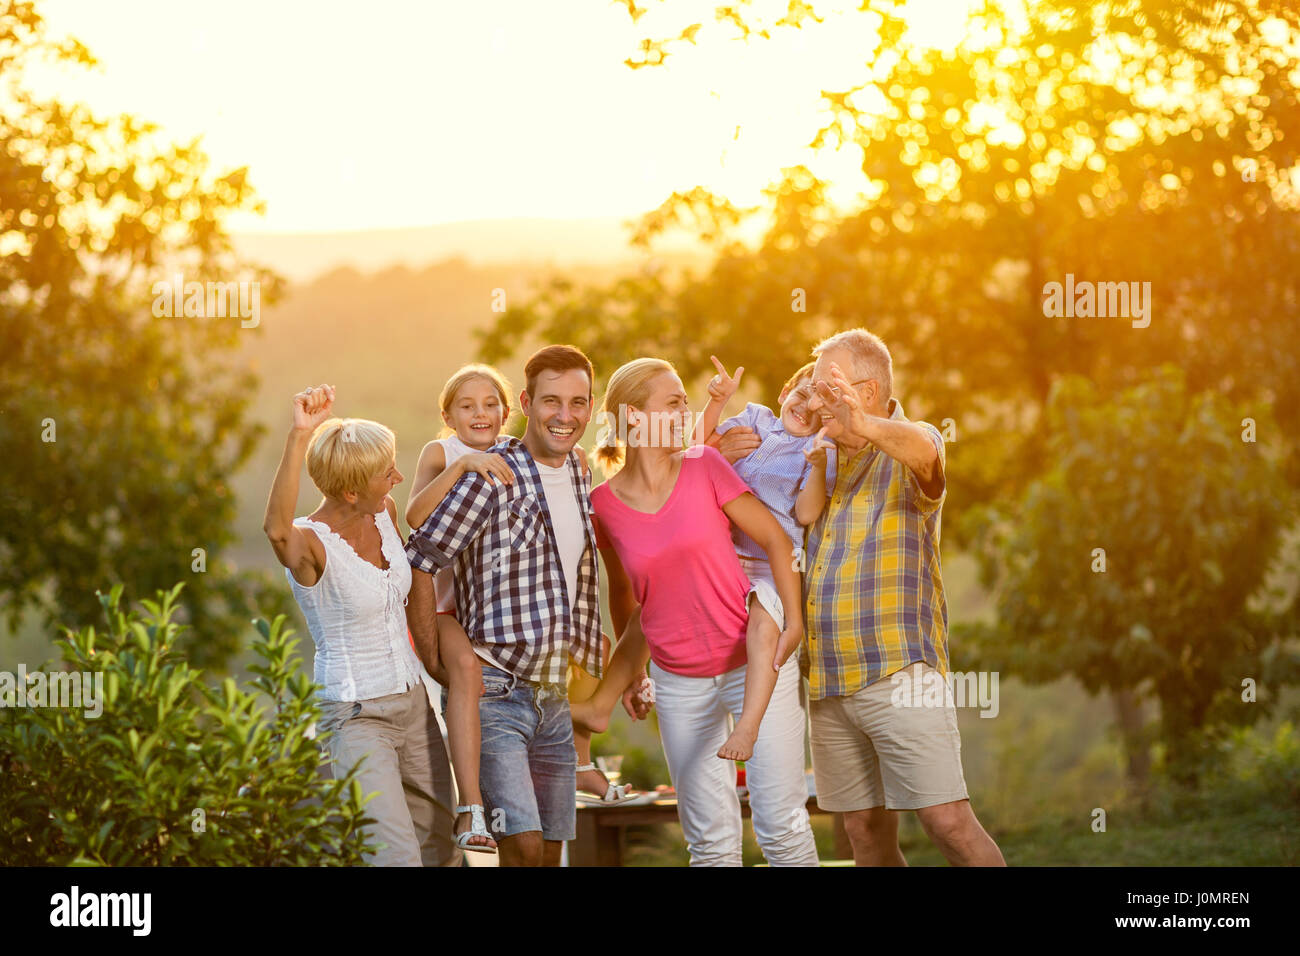 Génération de la famille en vacances posing together concept Banque D'Images